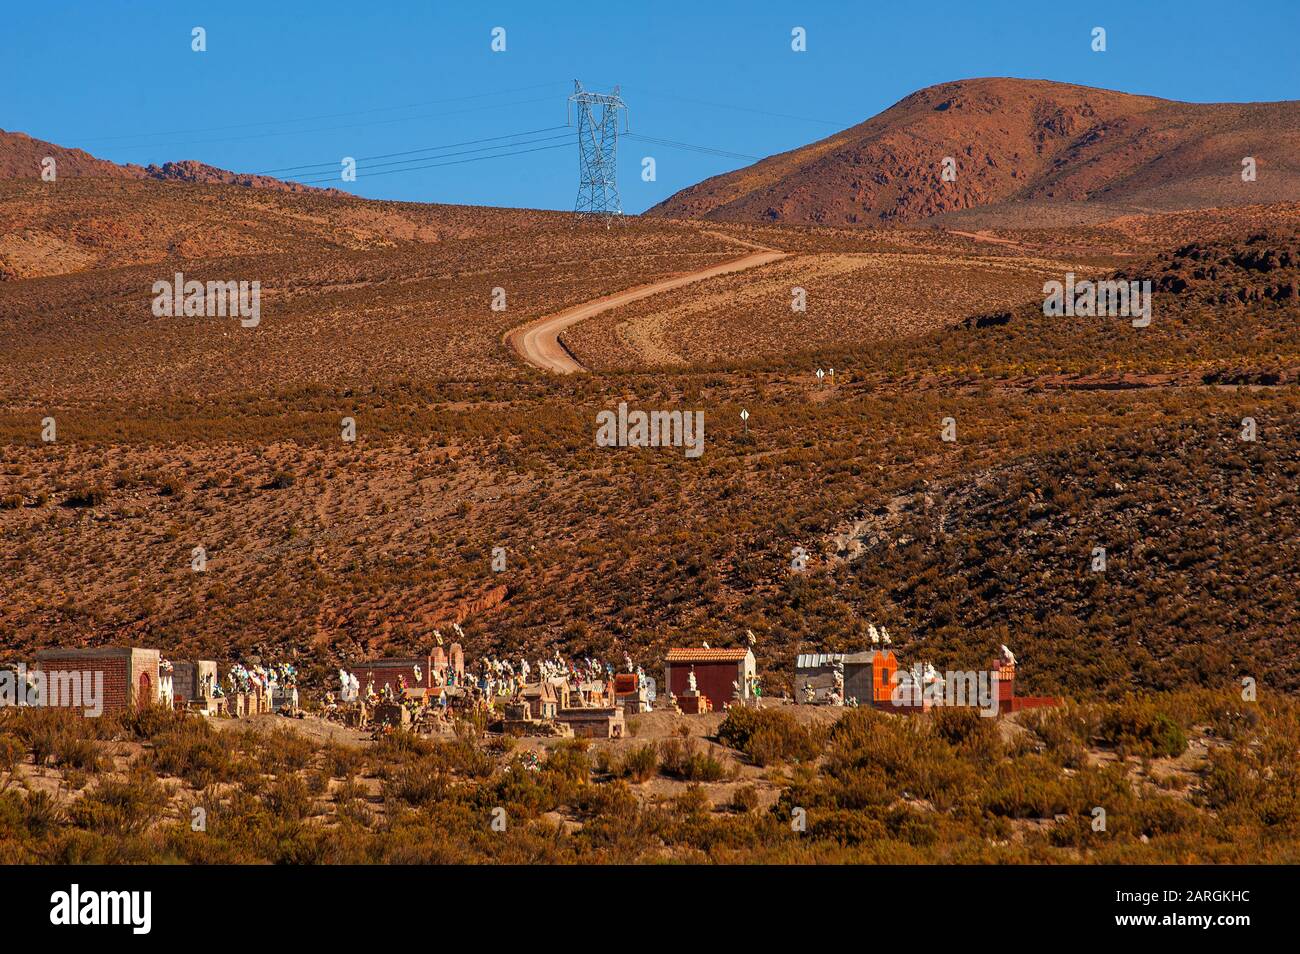 Andean cemetery on the Ruta 51, on the way to Paso Sico, San Antonio de Los Cobres, Argentina Stock Photo